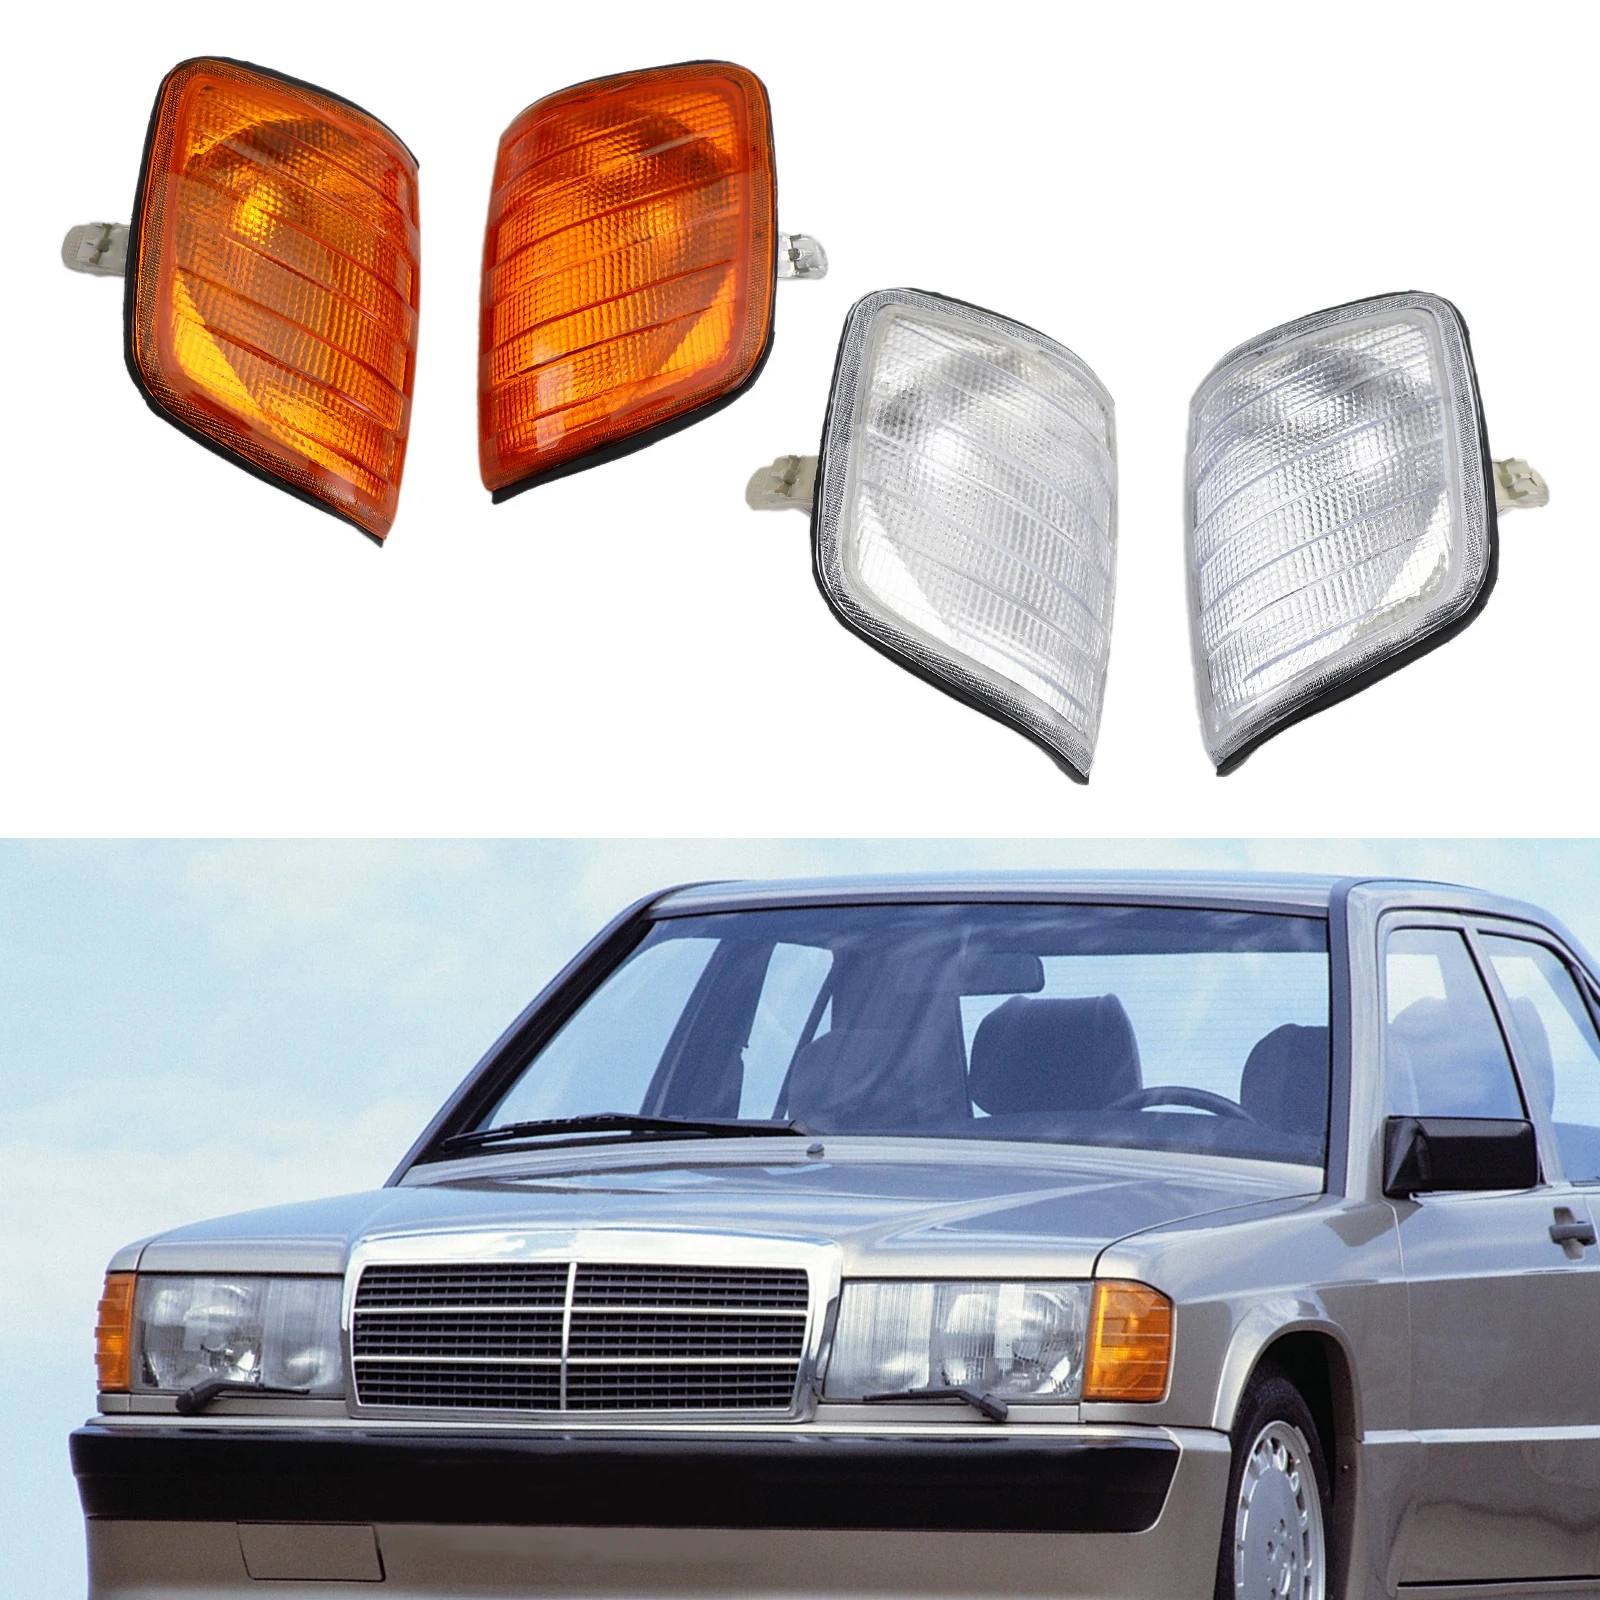 

Areyoushop Corner Lights Parking Lamps Pair For Mercedes-Benz E-Class W124 1986-1993 Car Auto Parts